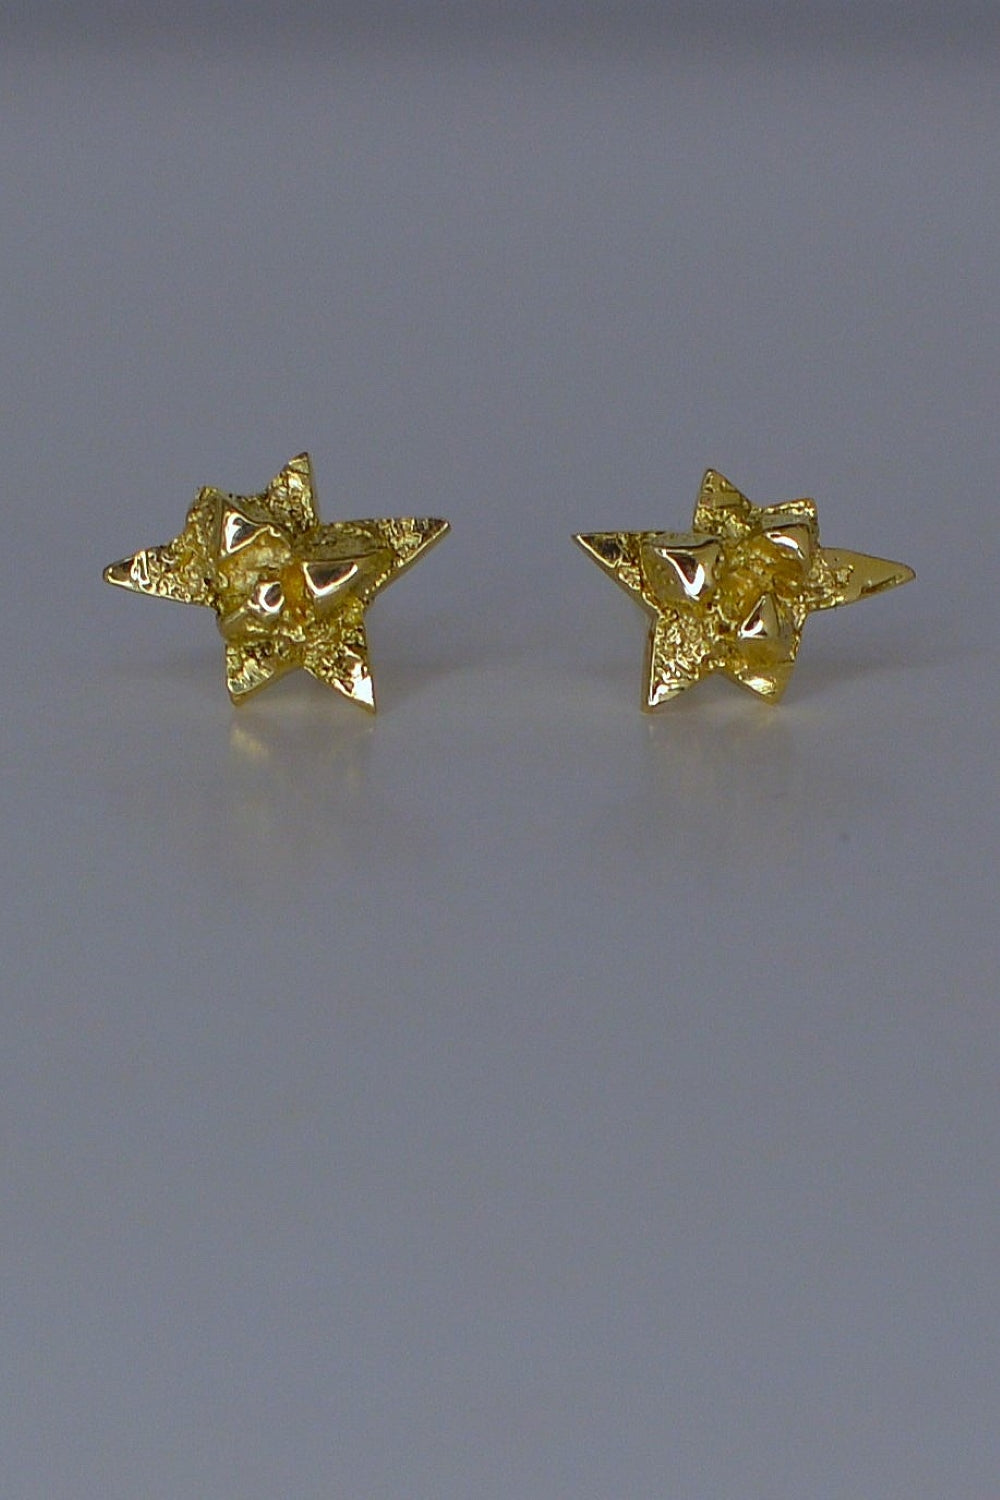 Nova gold earrings by Annika Burman